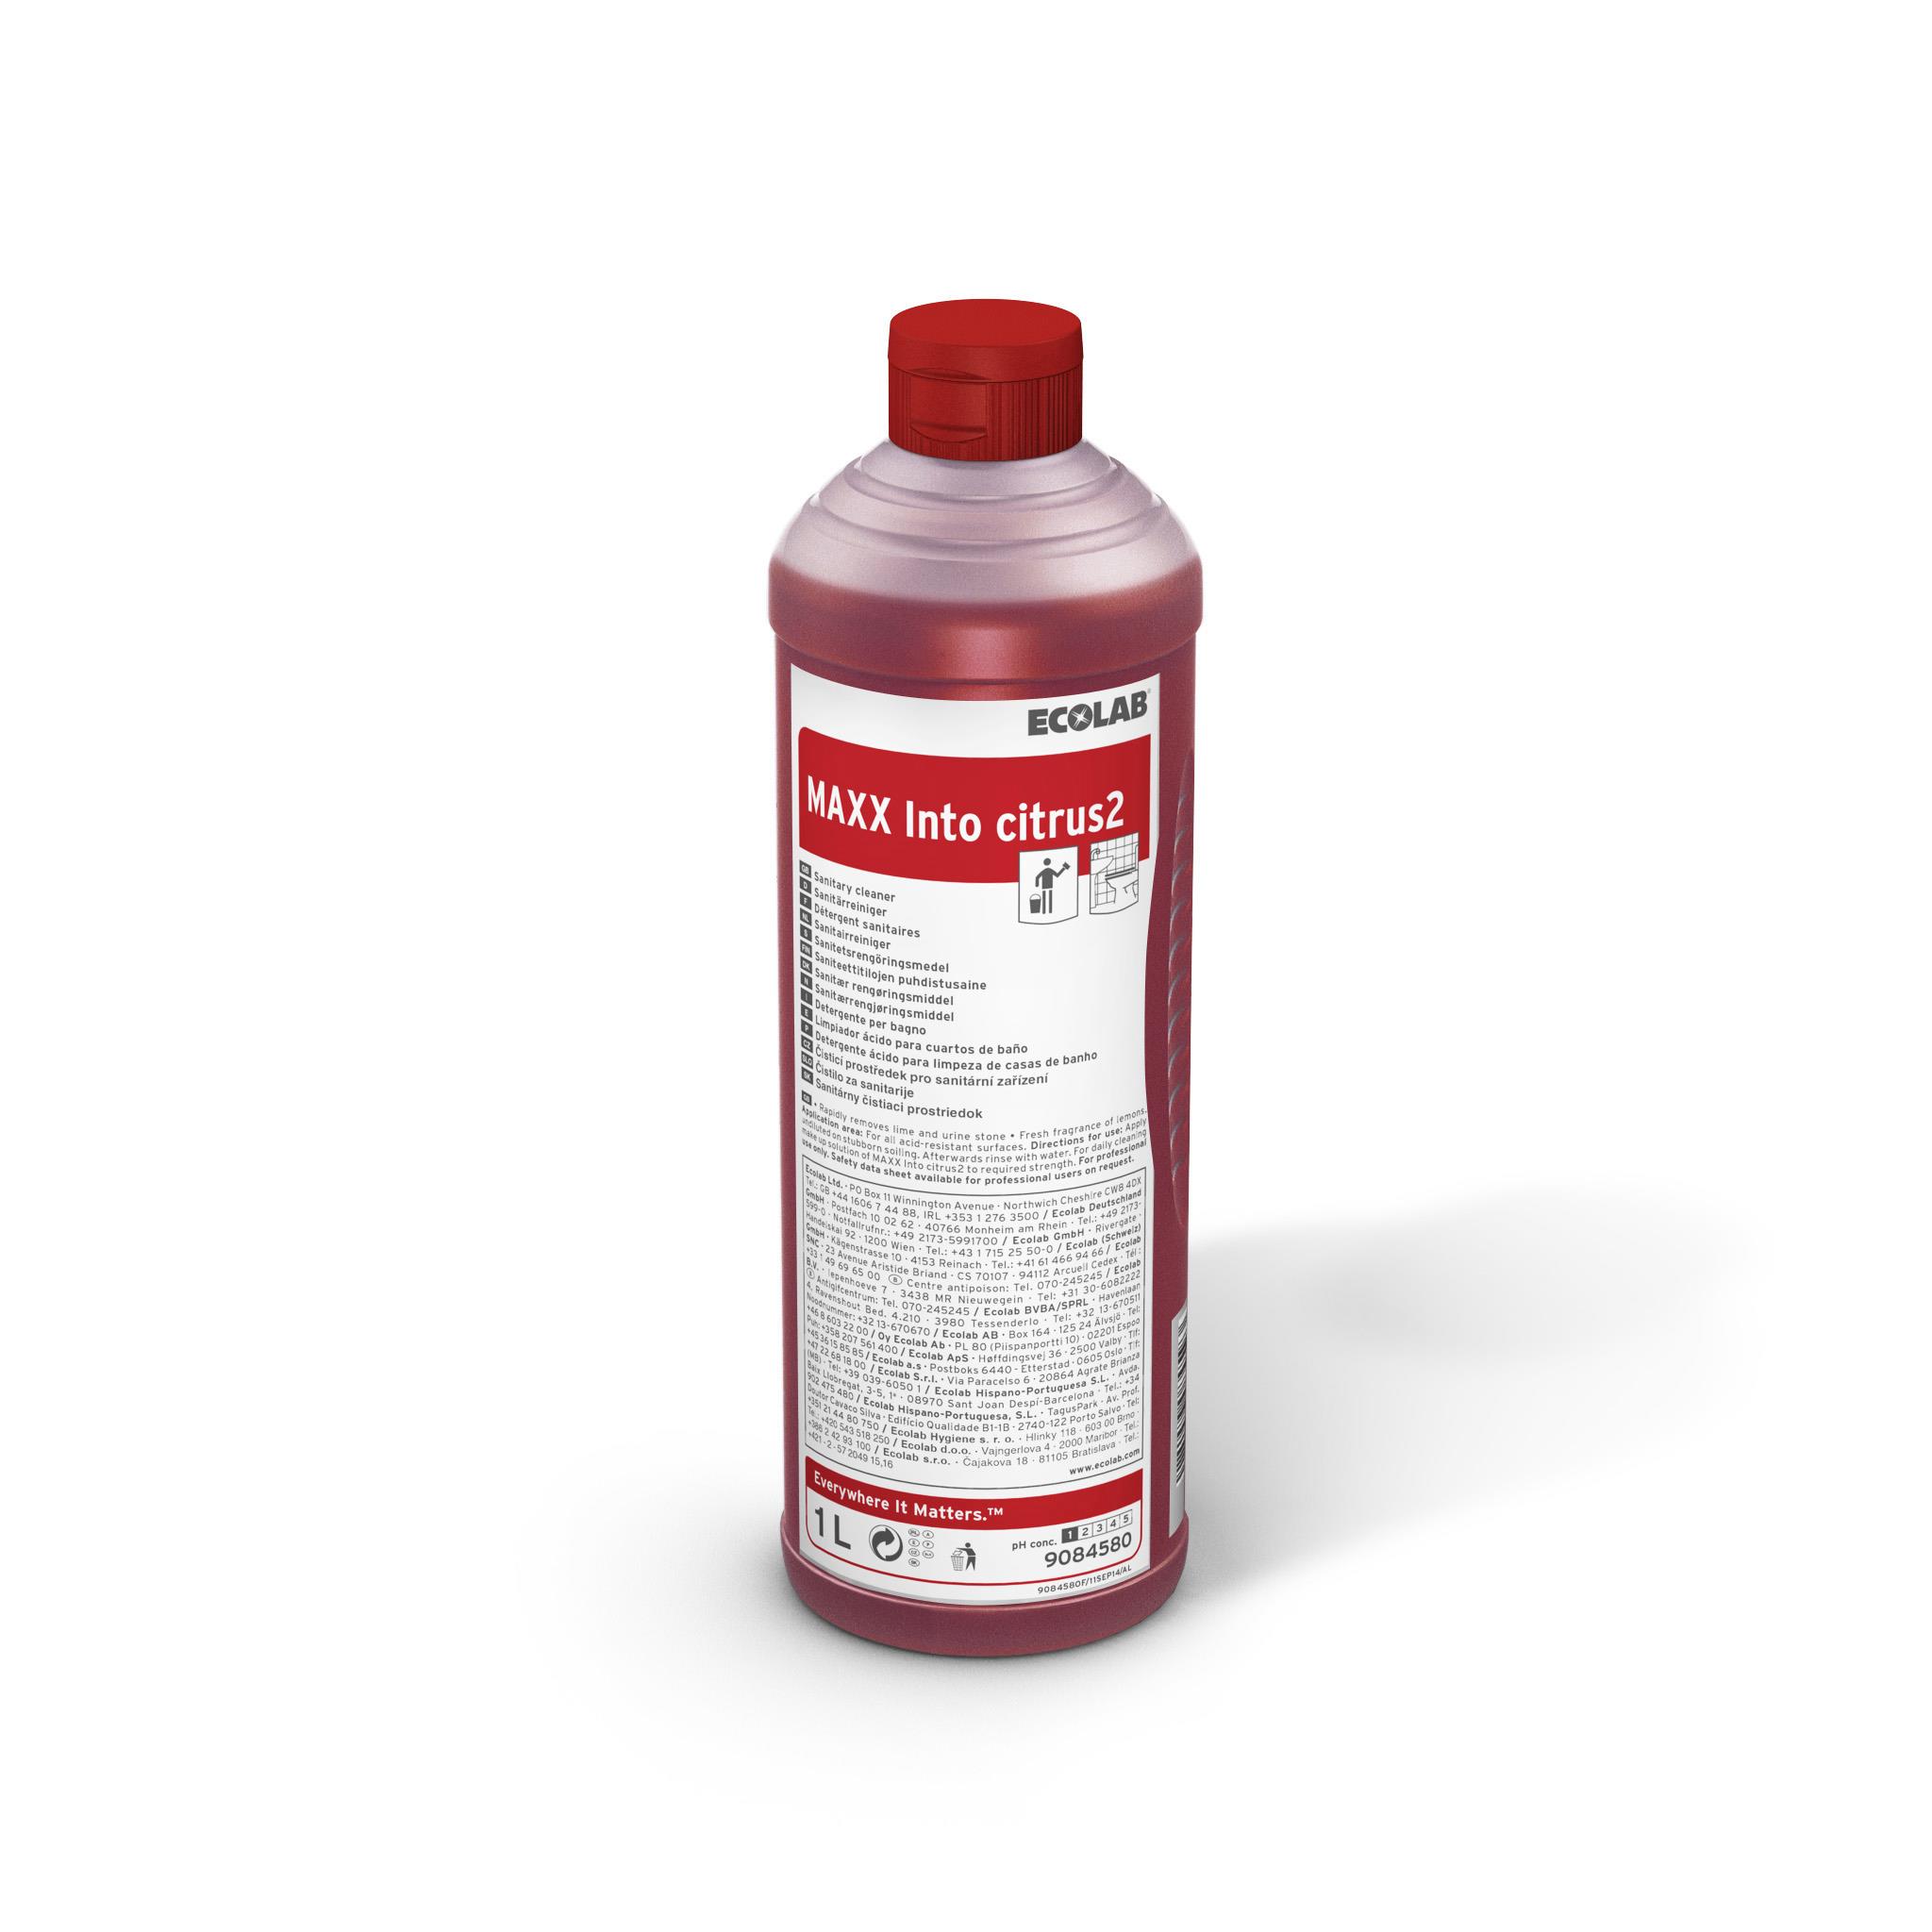 Detergent sanitar cu parfum de citrice MAXX2 INTO CITRUS 1L Ecolab